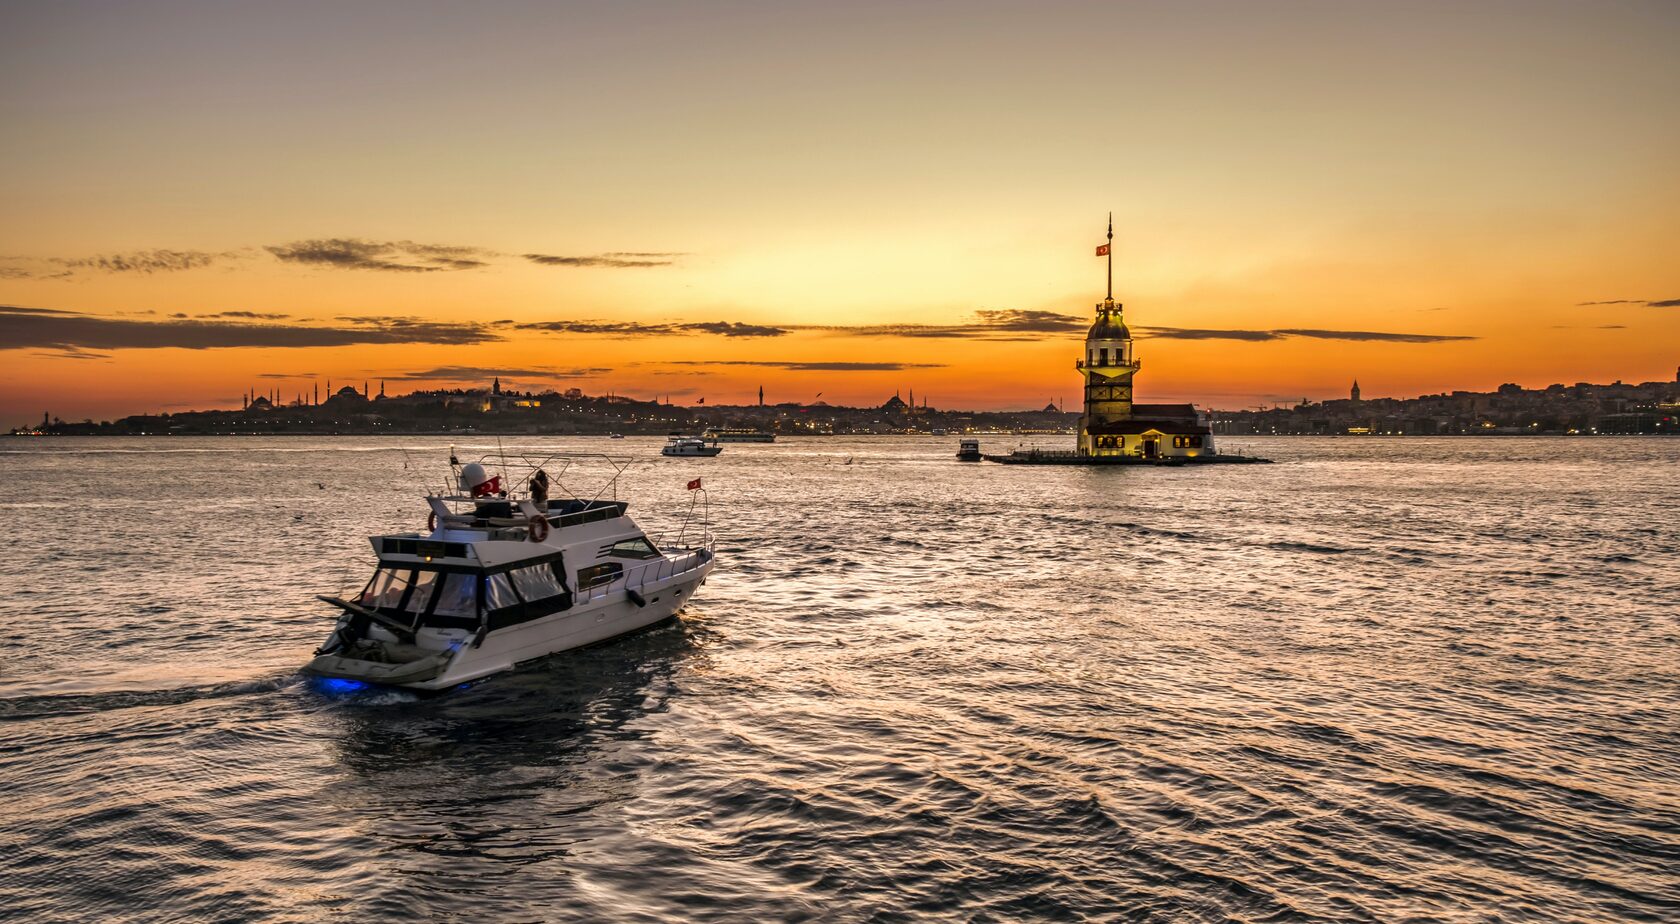 Яхт туры в Турции, прогулки на яхте по Стамбулу, закатные туры Стамбул